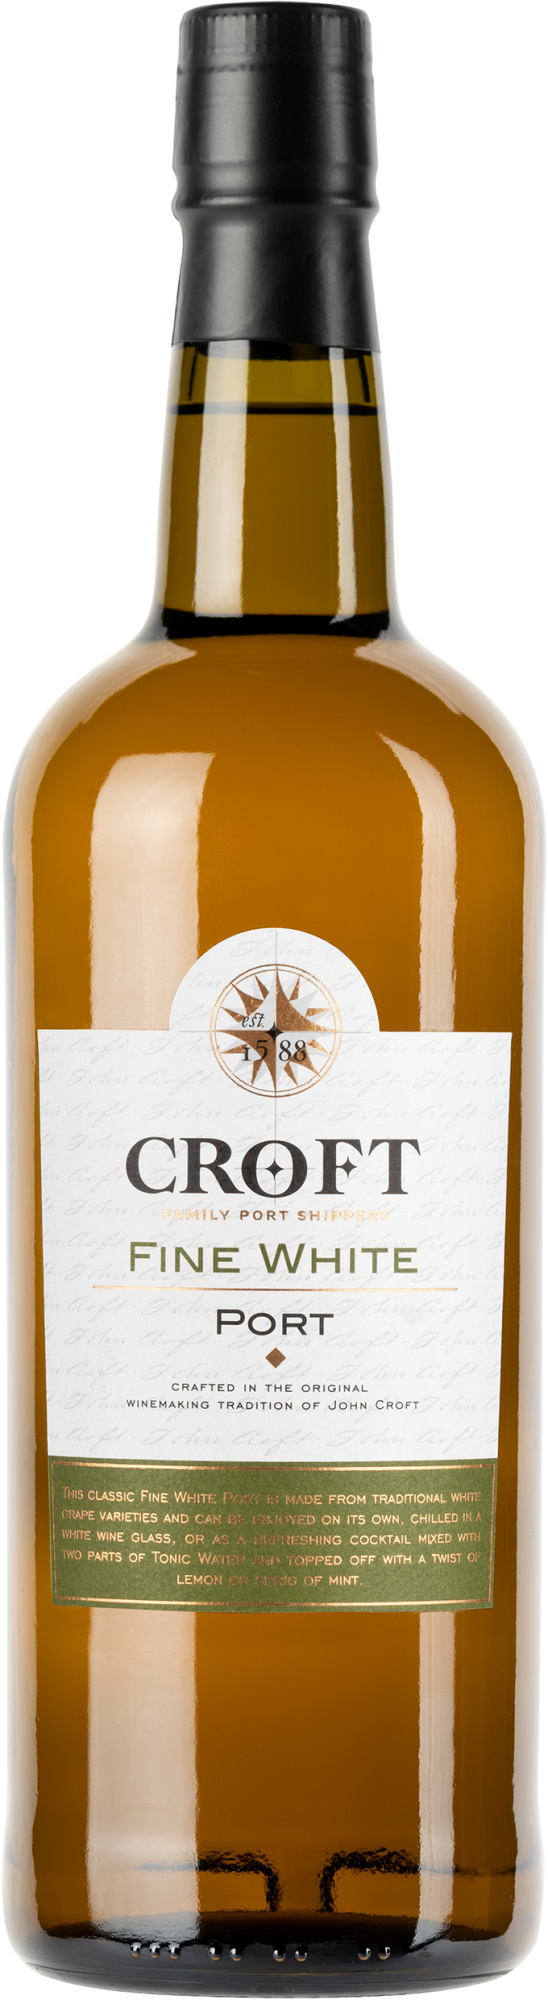 Croft Fine White Port 75 cl Portugal Douro